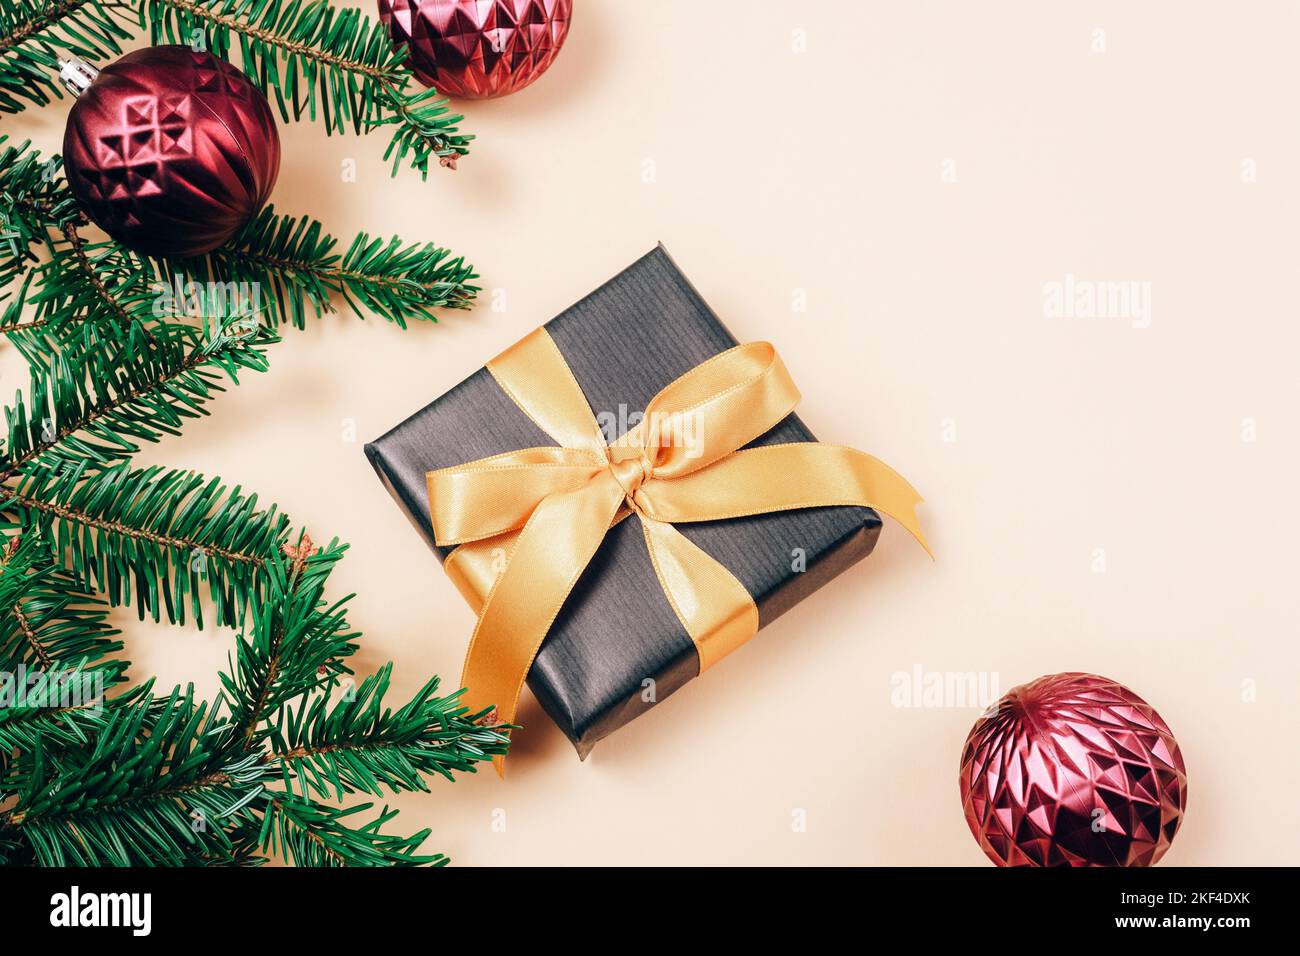 Scatola regalo e rami di abete con decorazioni natalizie su sfondo beige. Concetto di vacanza invernale. Vista dall'alto, disposizione piatta, spazio di copia. Foto Stock